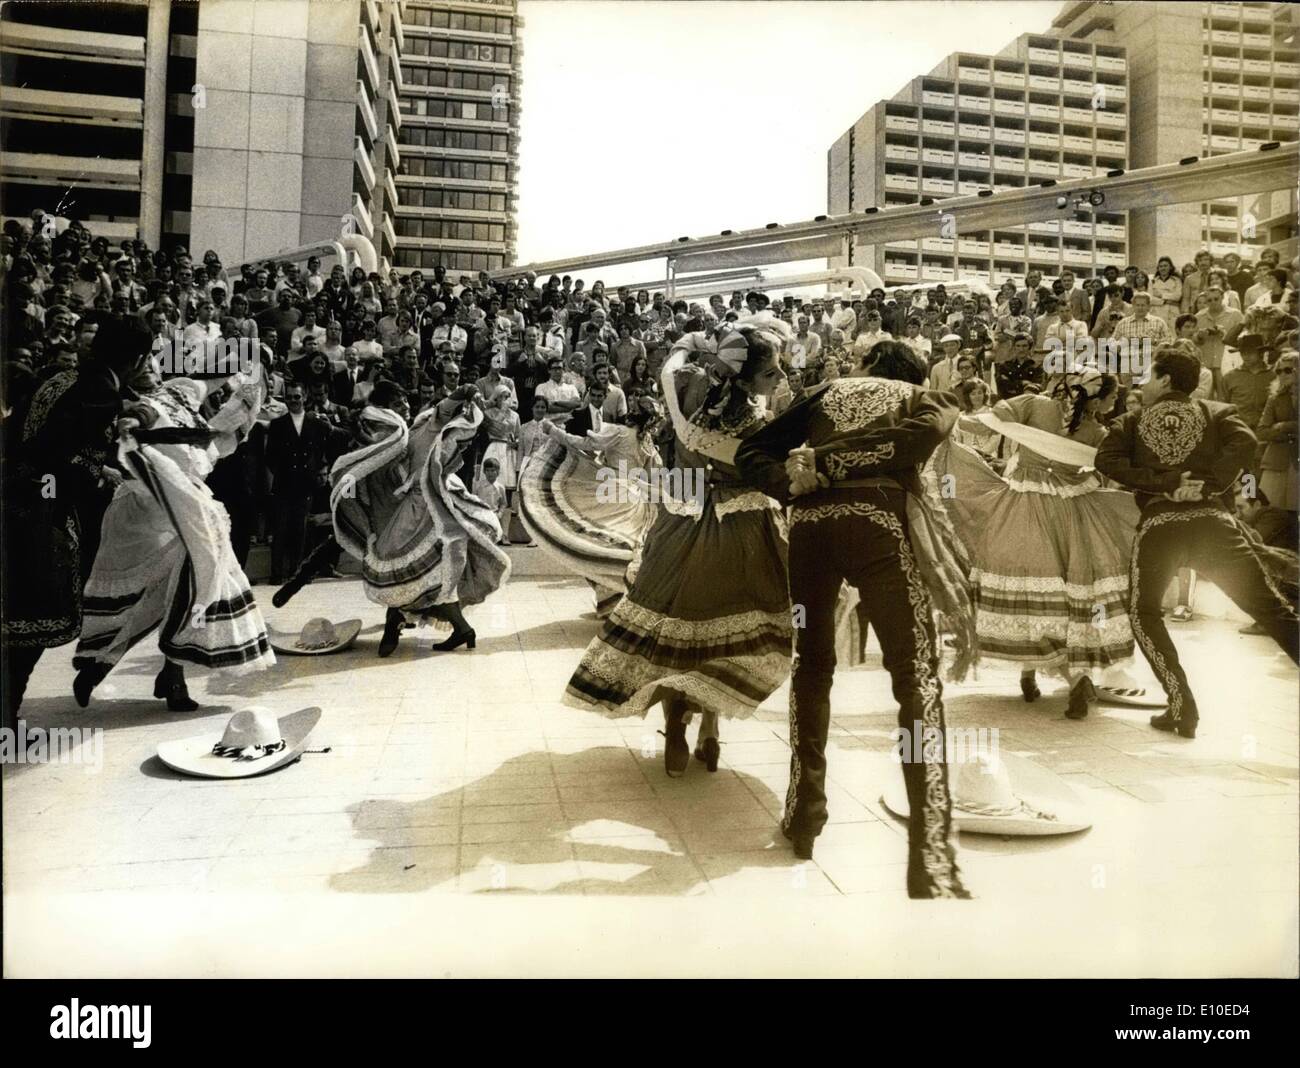 08 août 1972 - Jeux Olympiques de Munich pour ouvrir demain : photo montre un groupe de danseurs mexicains dans le village olympique de la scène devant une foule de spectateurs. Banque D'Images